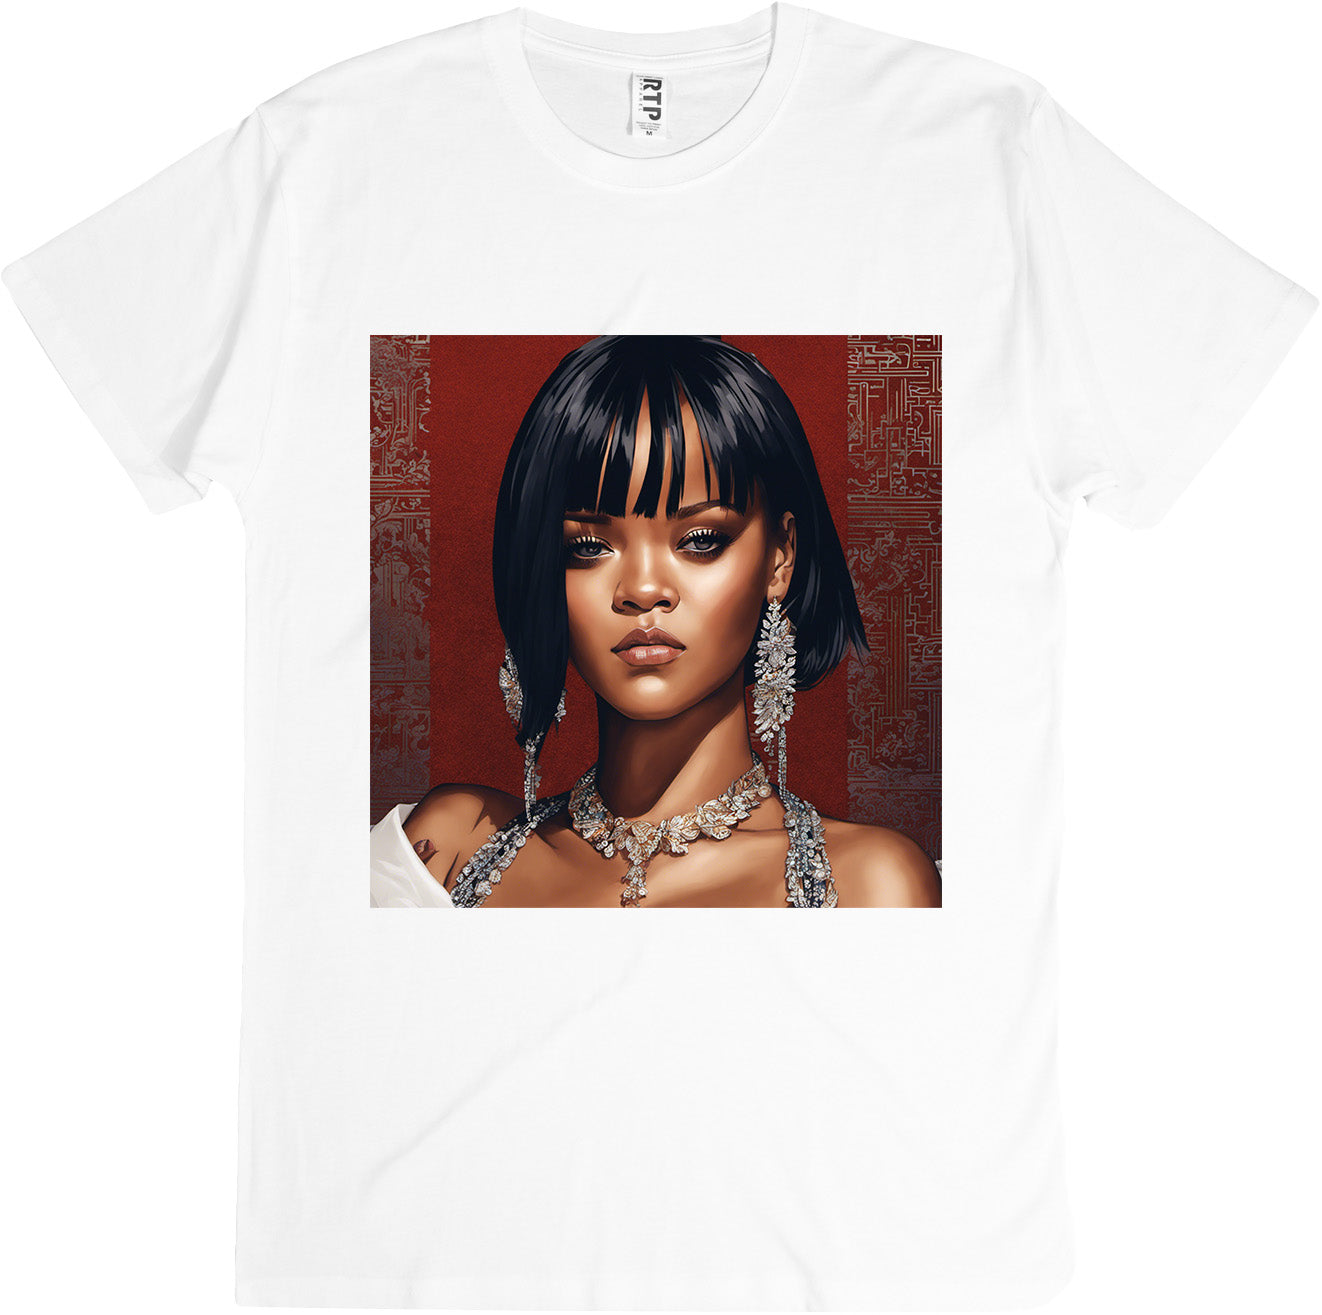 Rihanna 10